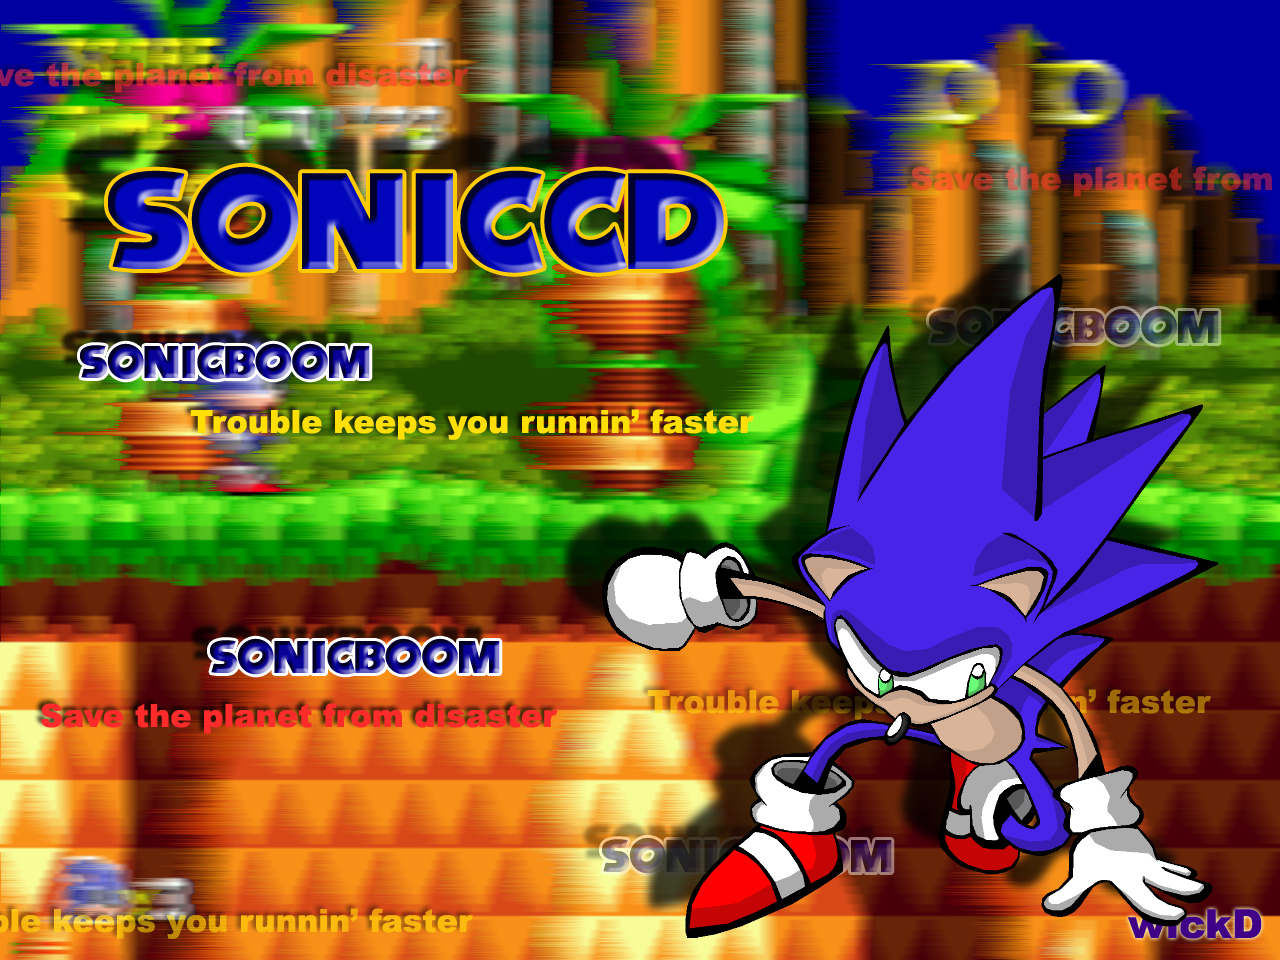 Sonic-CD-wallpaper-sonic-cd-2194467-1280-960.jpg